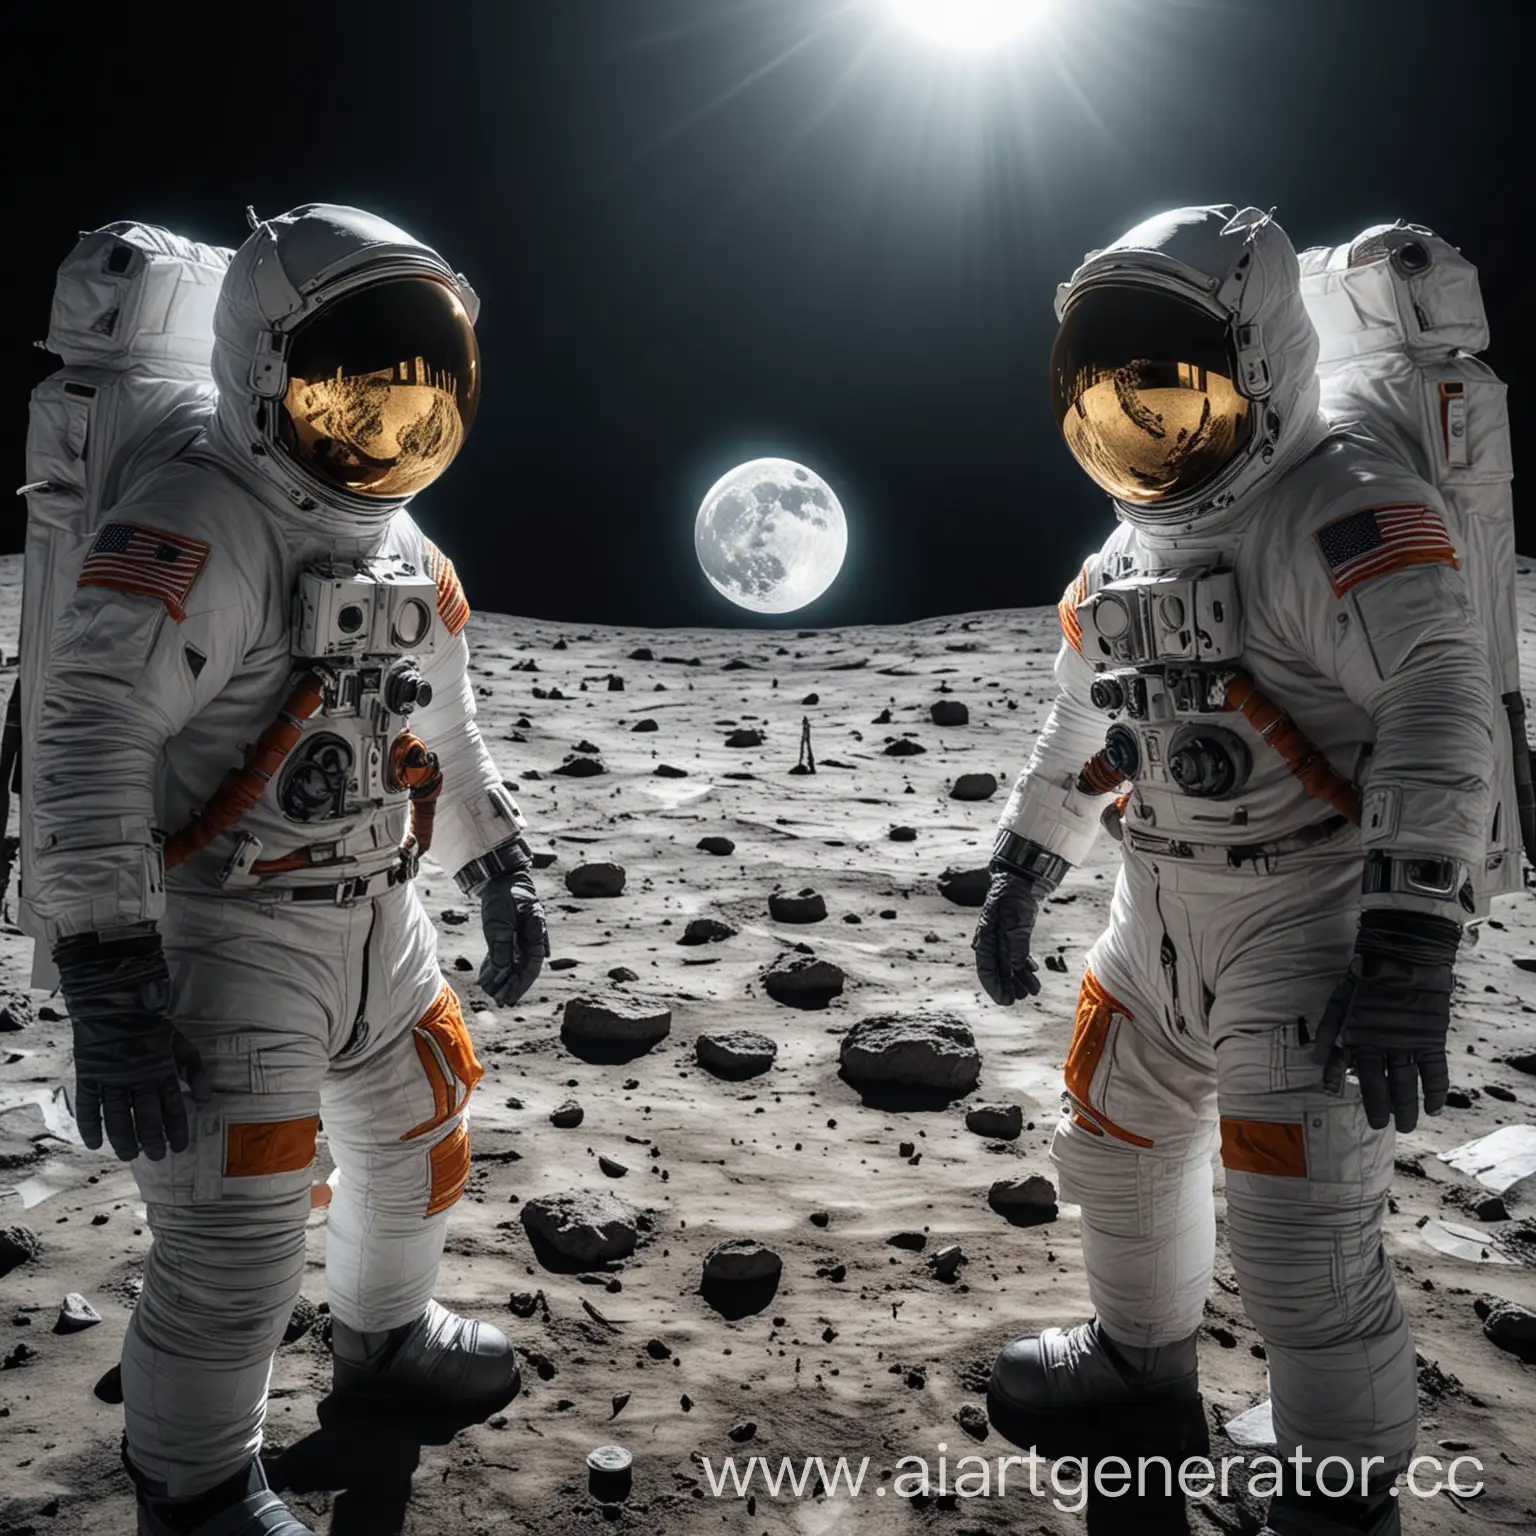 создай 4К лучшие фото два разных астронавта в отражение скафандра одного луна а у второго оттражение криптовалюты биткоин